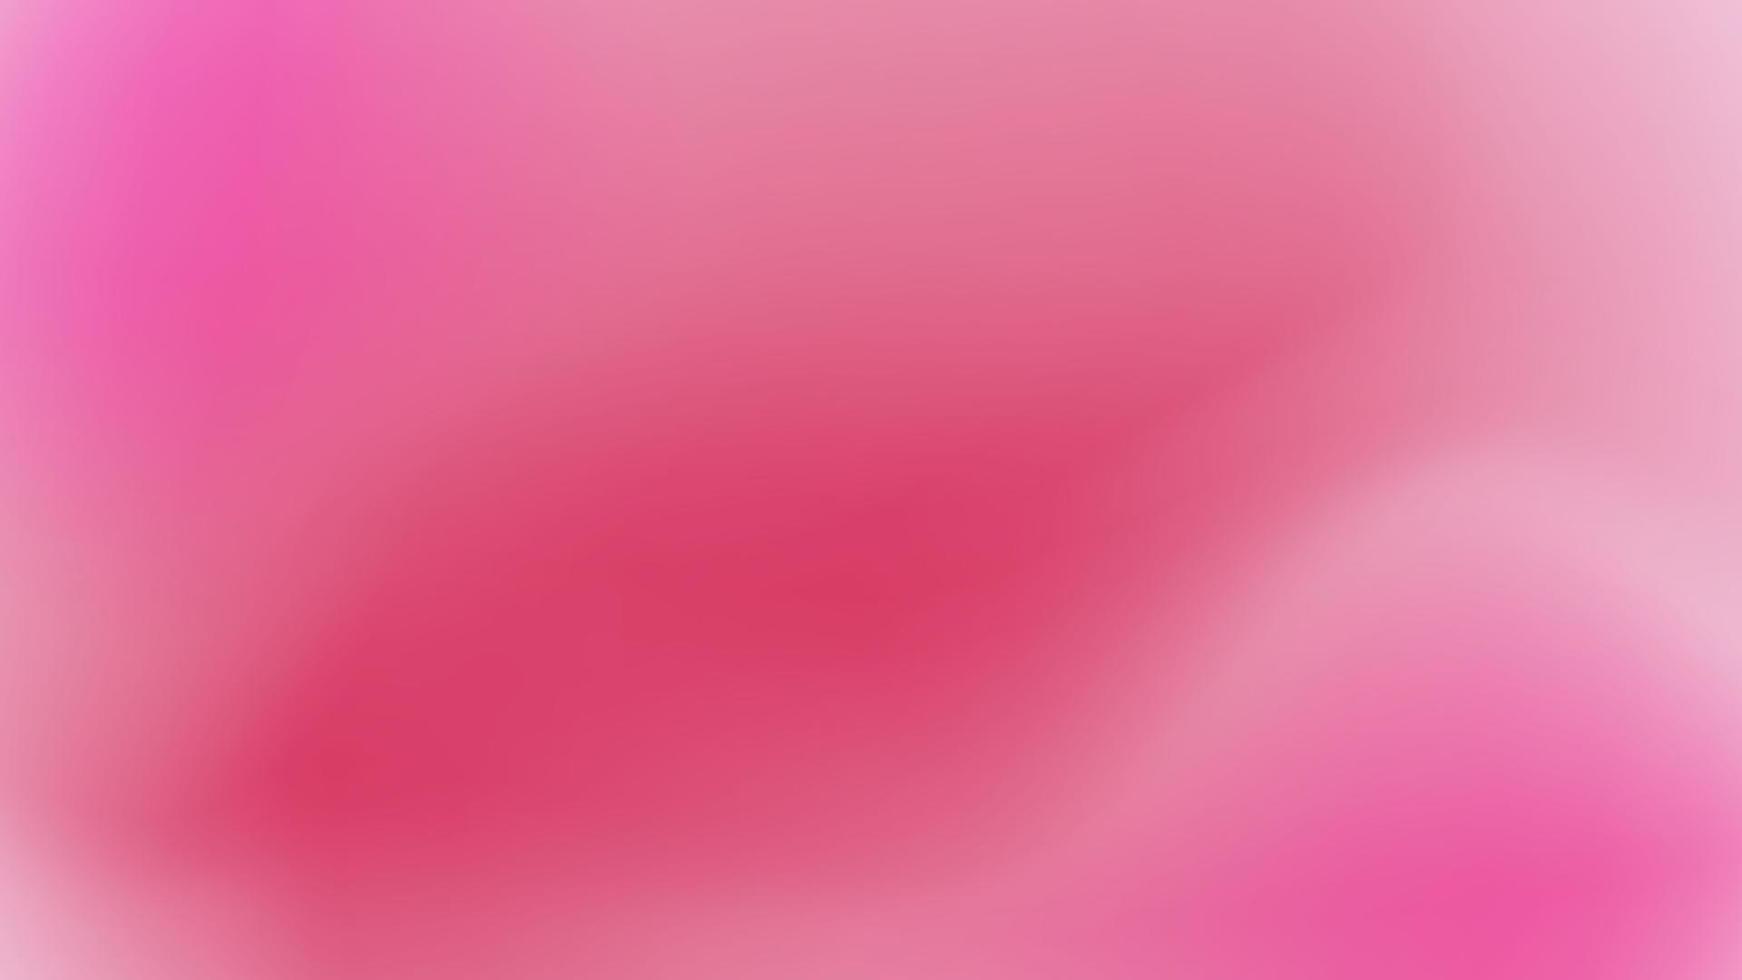 zachte gradatie, abstract in heldere kleurrijke gradiëntstijl, gradiëntachtergrond, vage decoratieve elementen van de gradiënttextuur, roze behangvector. vector